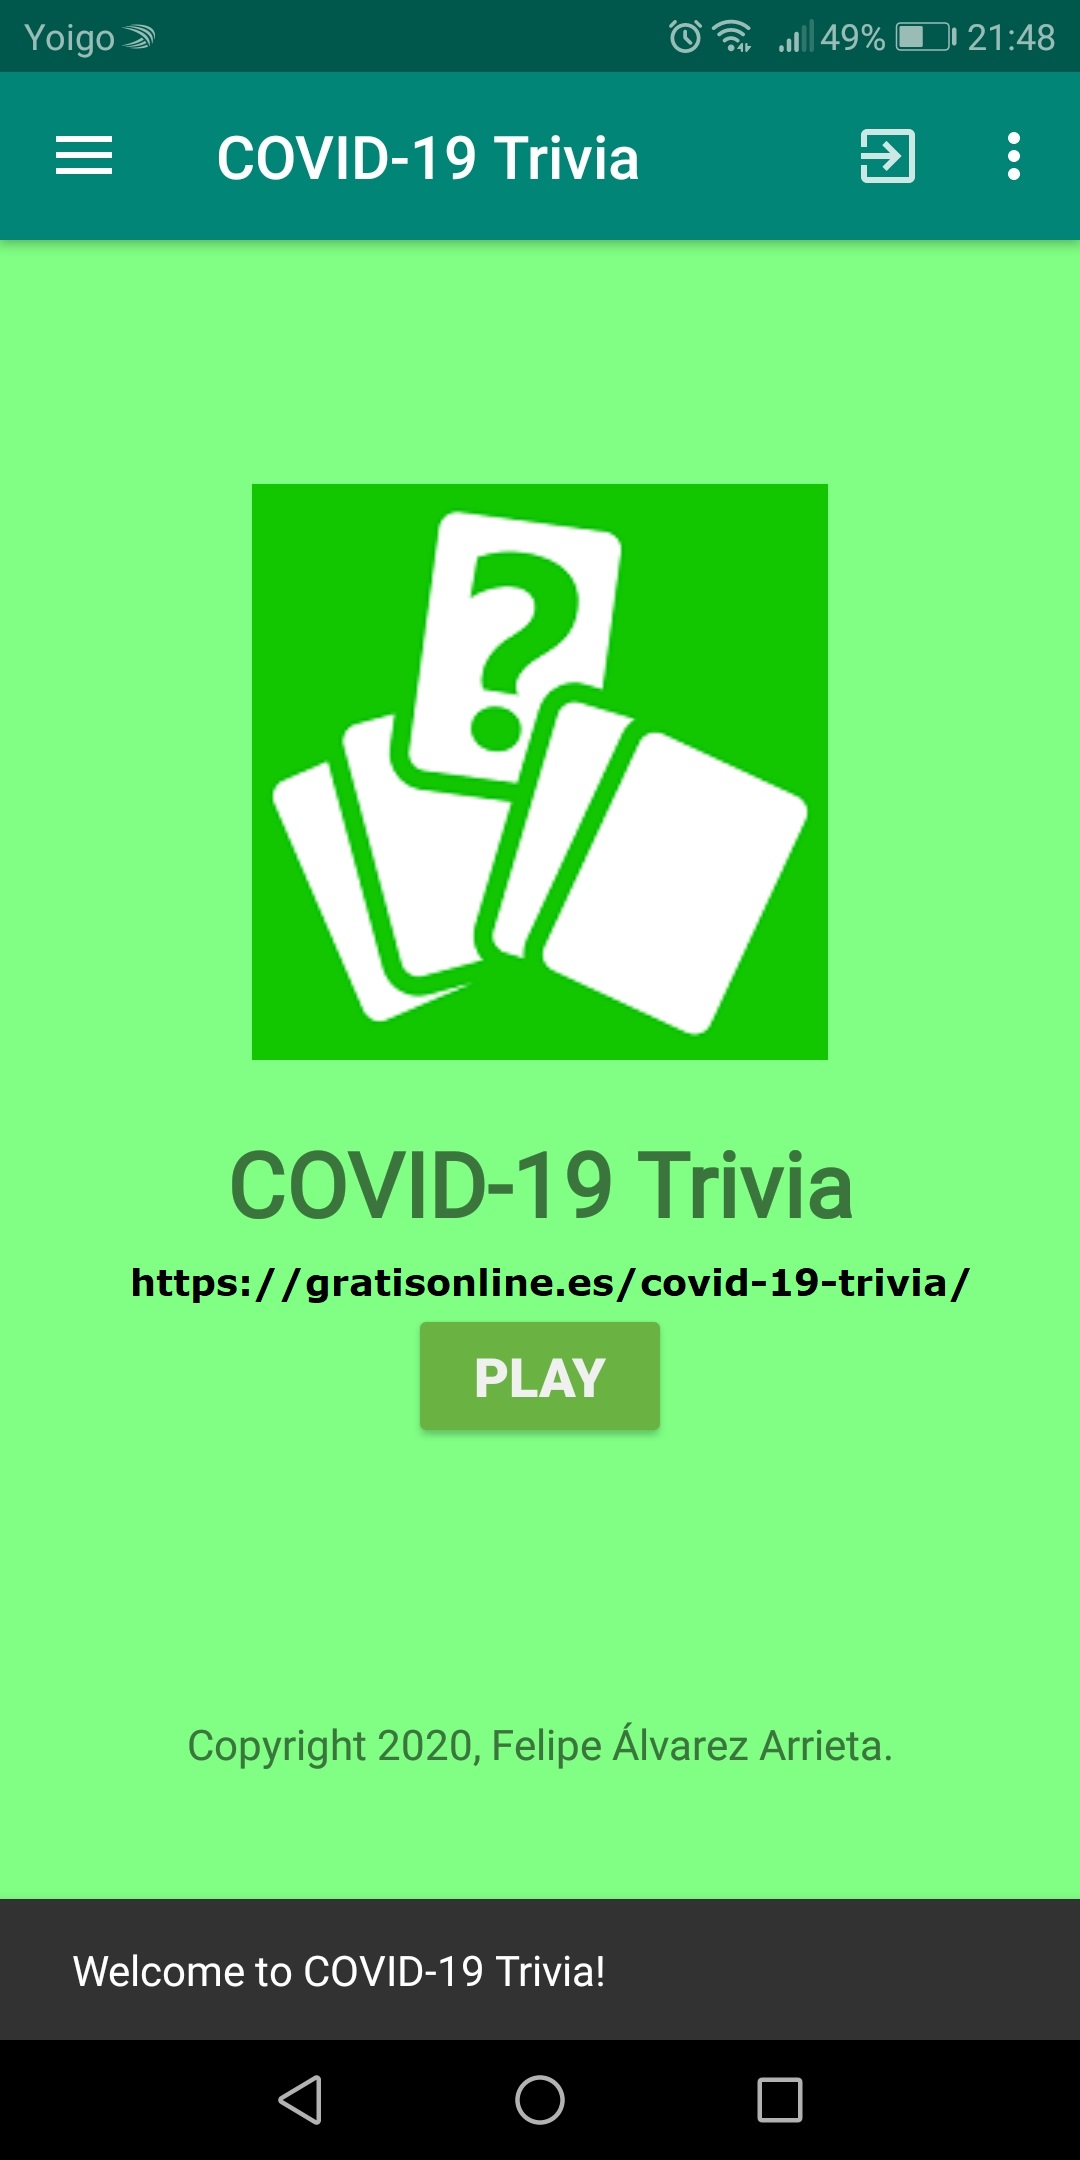 Covid-19 Trivia